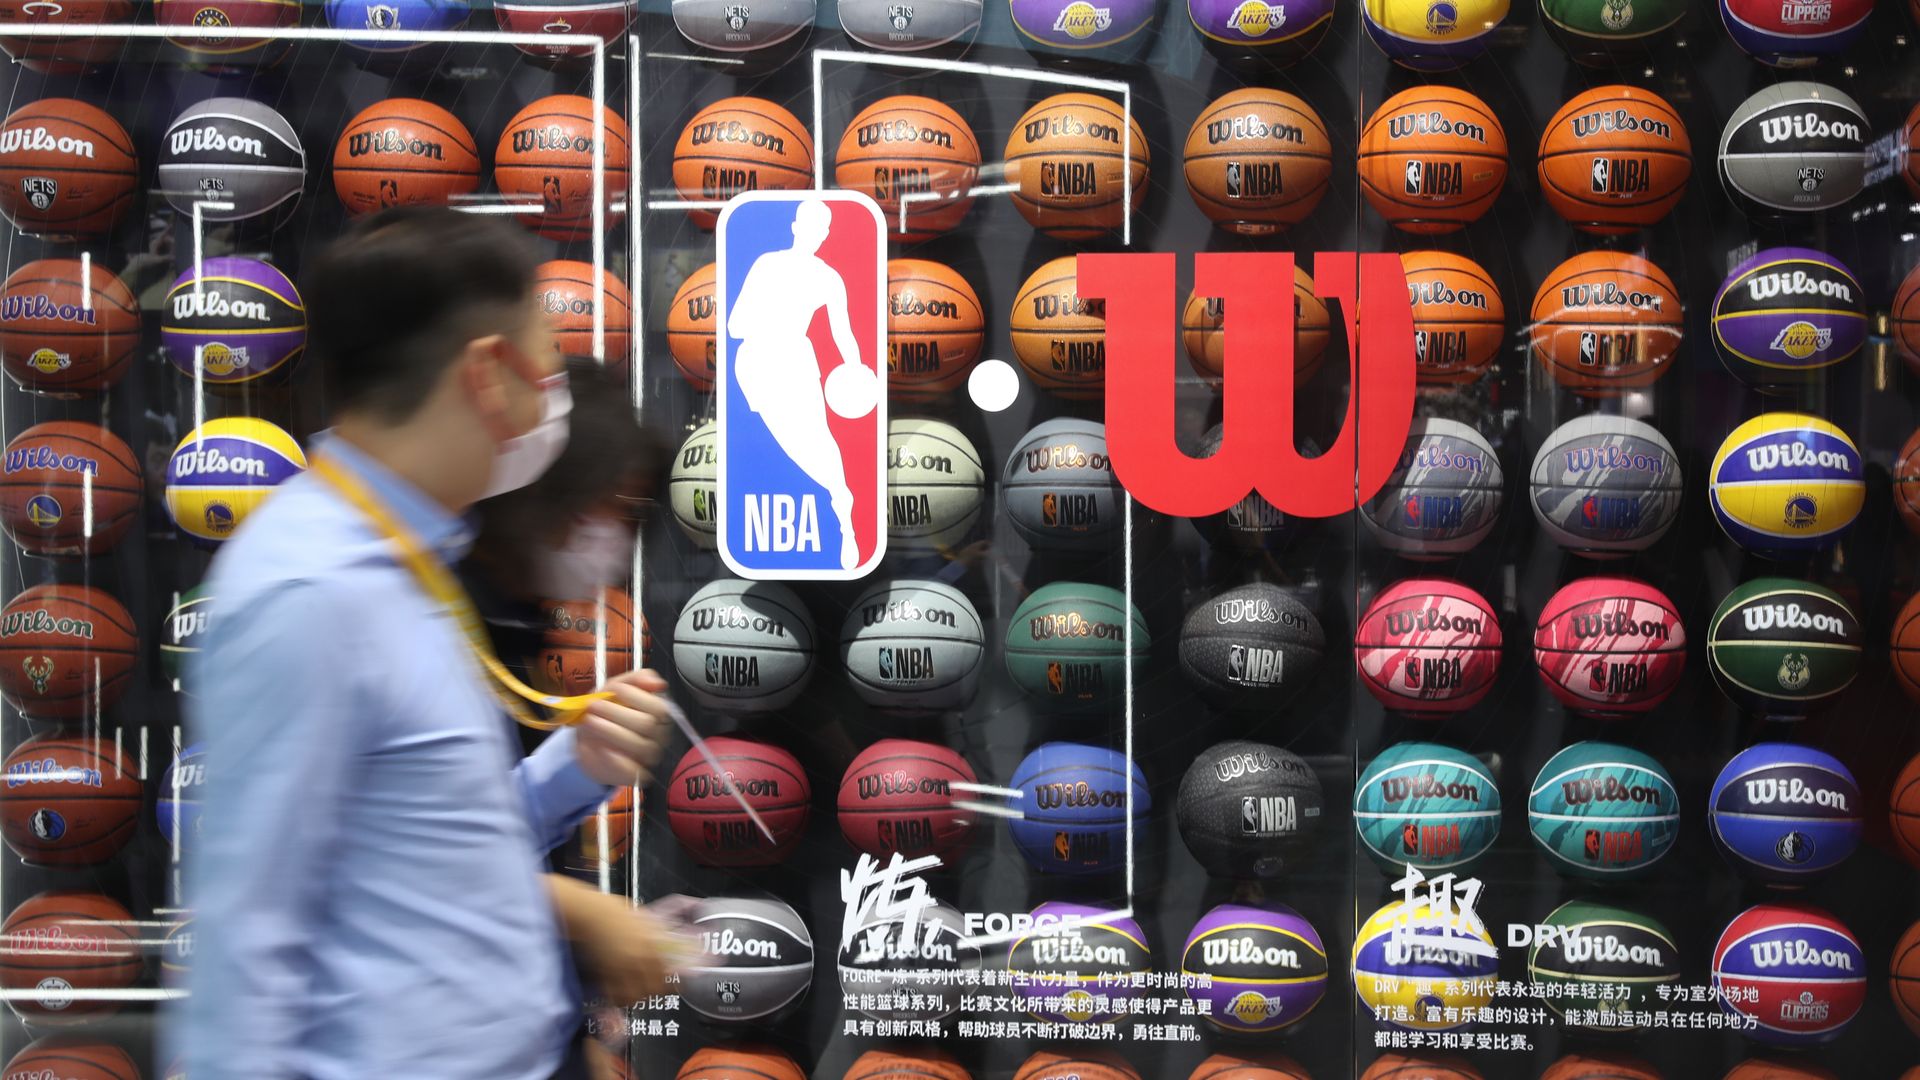 An NBA-Wilson exhibit in Shanghai